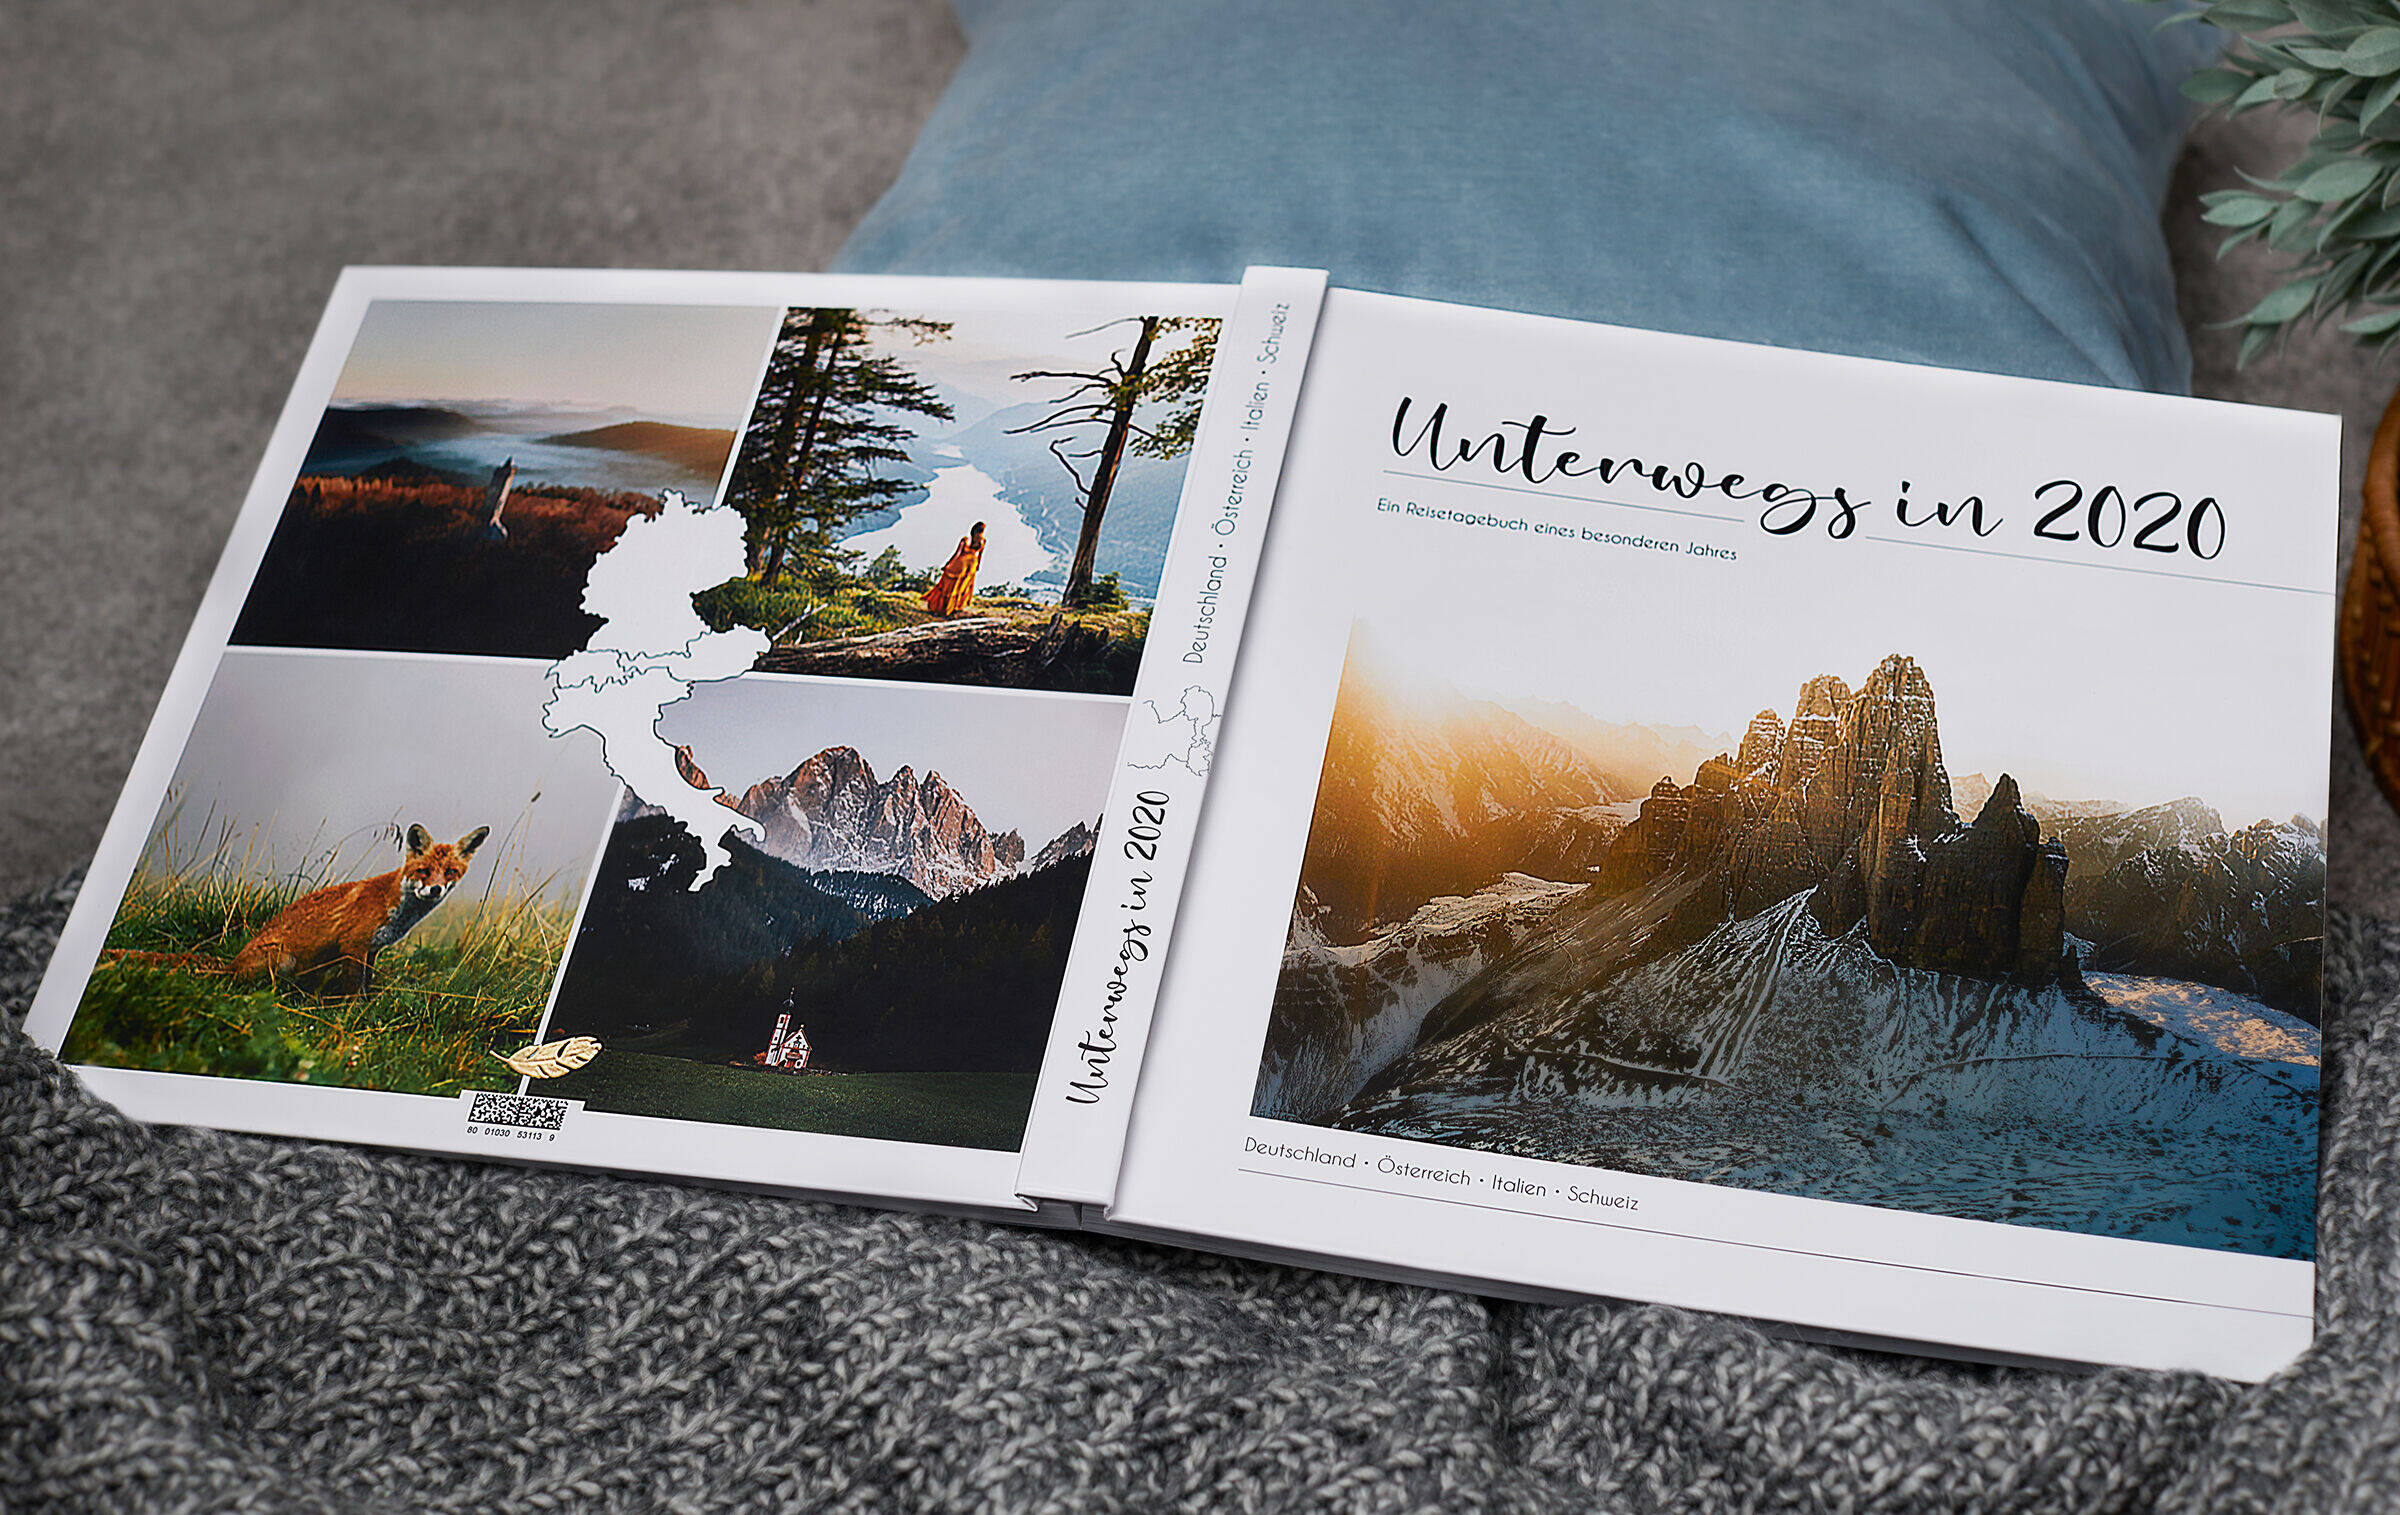 Der Einband eines Fotobuchs zeigt ein Bergmassiv, darunter steht "Unterwegs in 2020".